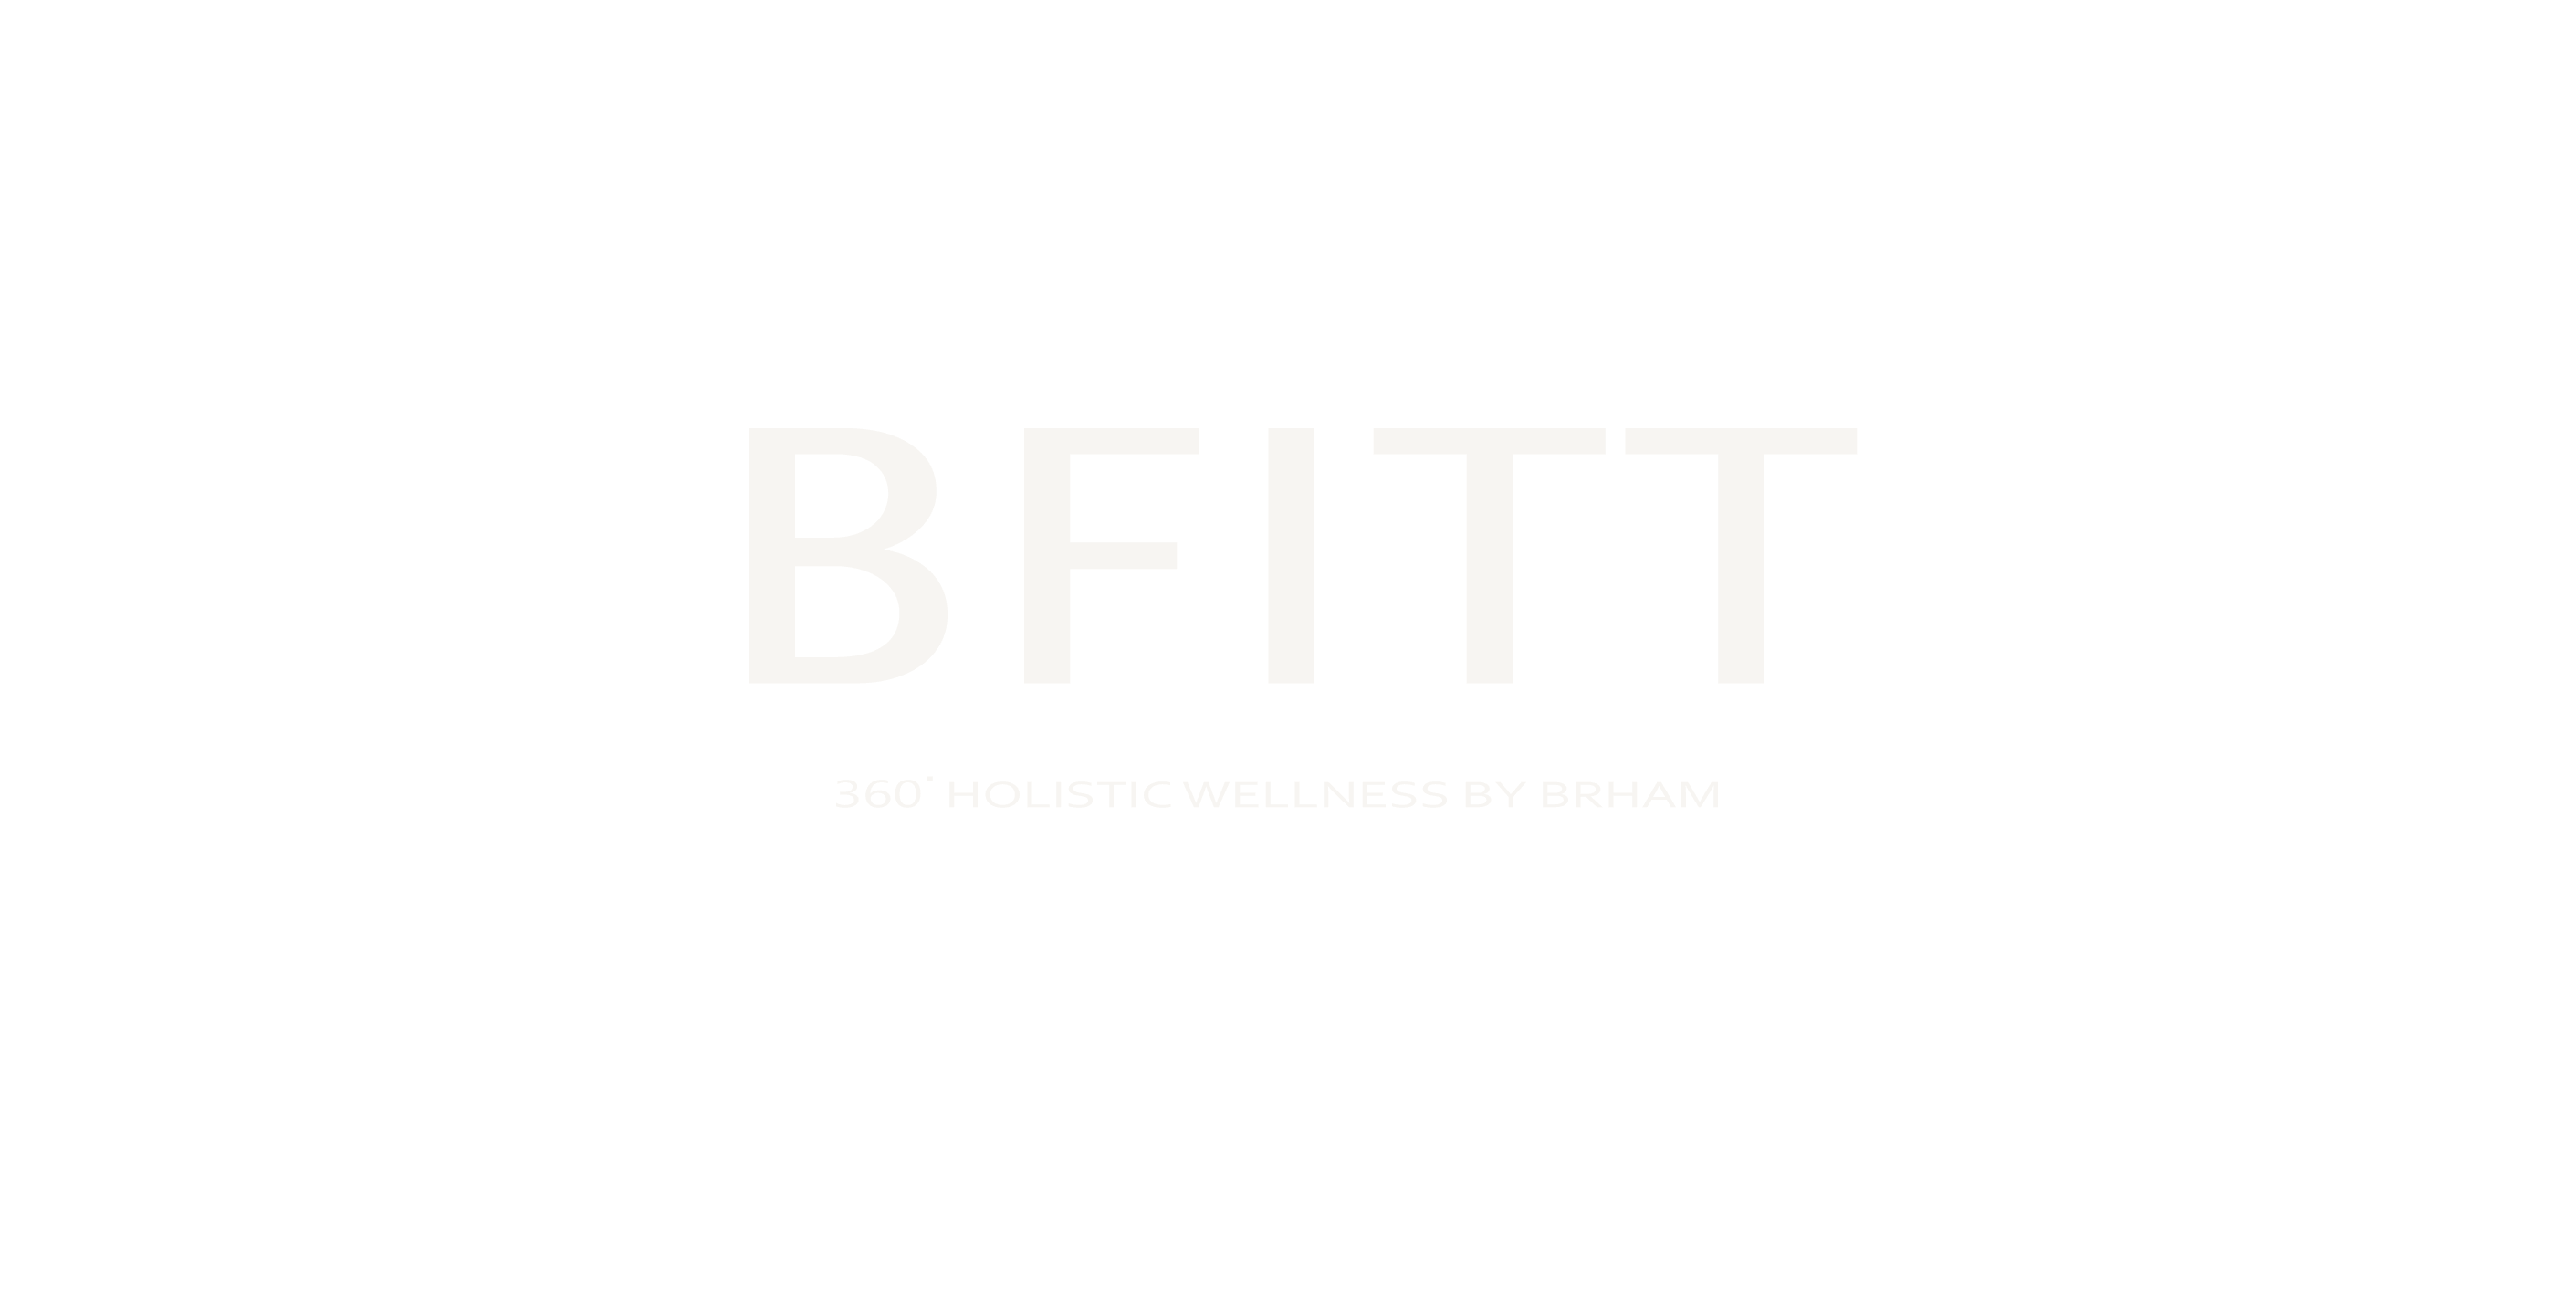 Bfitt logo